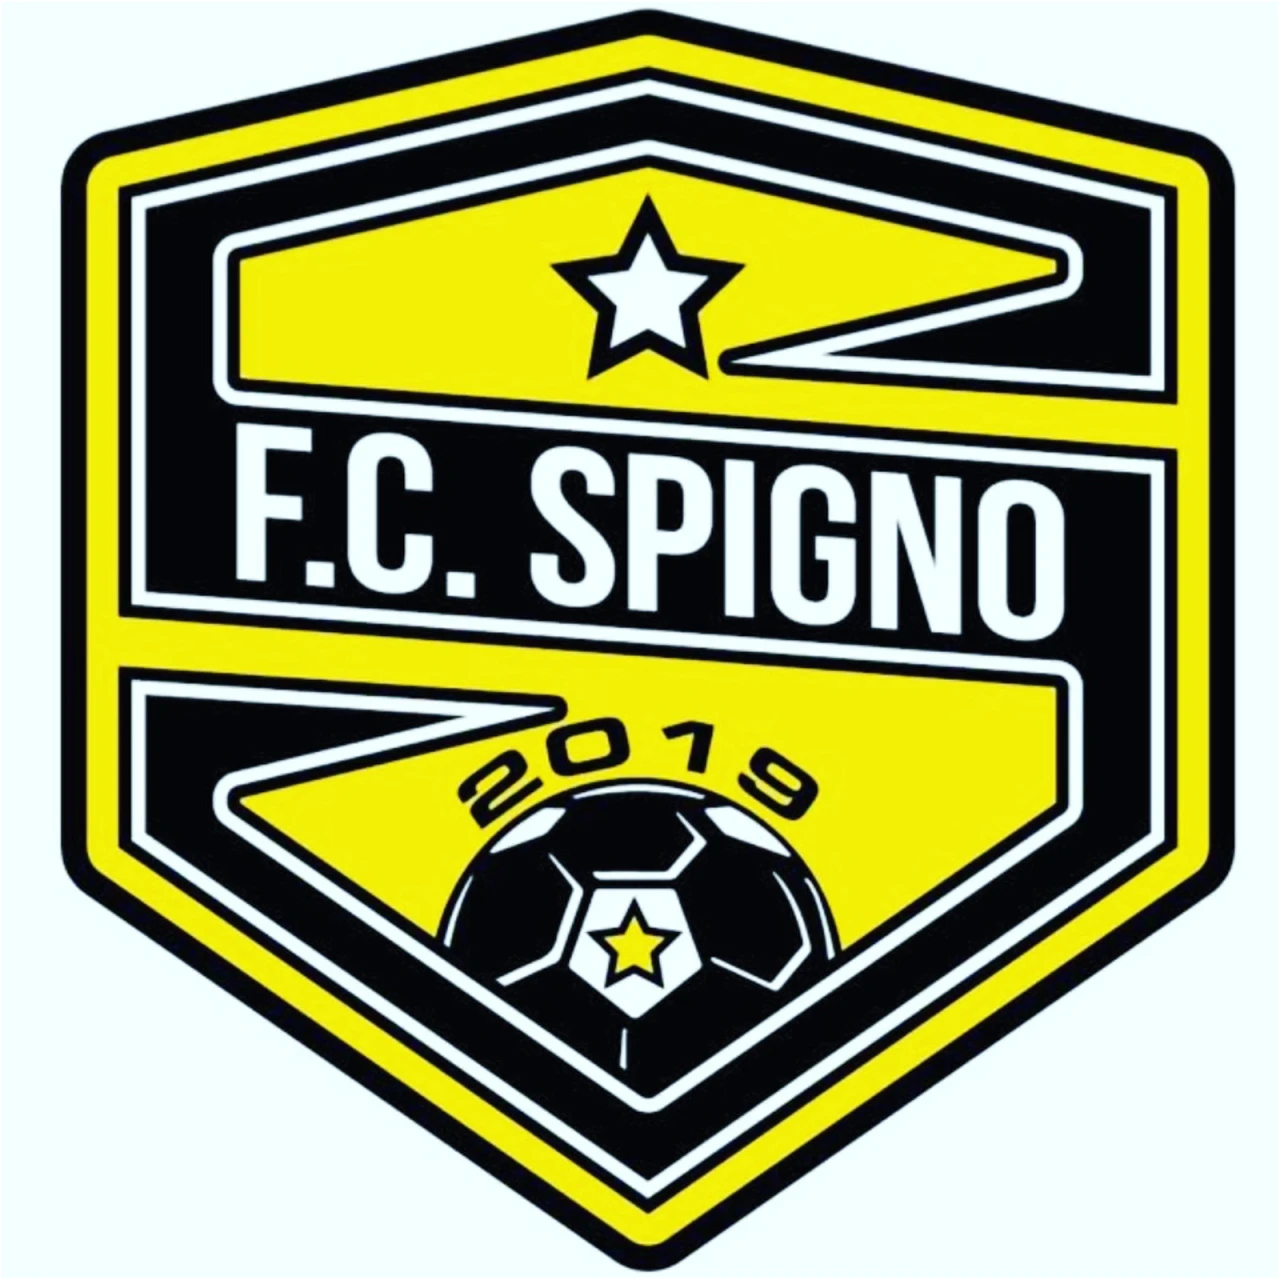 F.C. Spigno